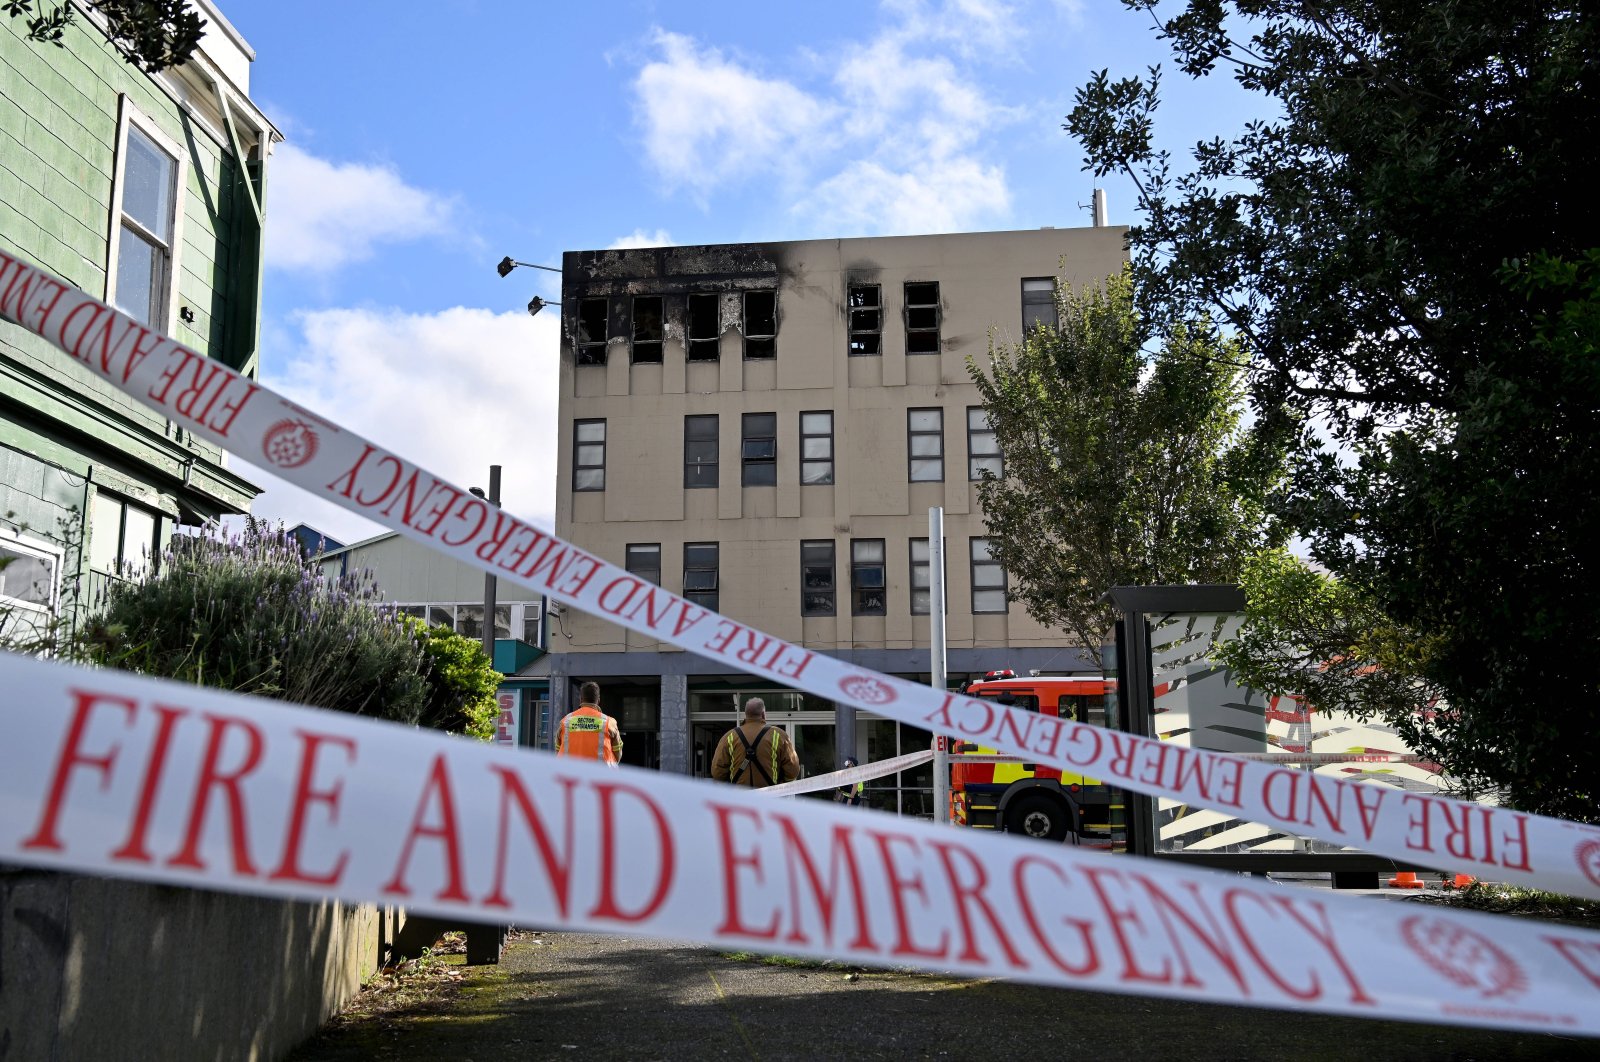 Hostel fire in New Zealand’s Wellington kills six, 11 more missing